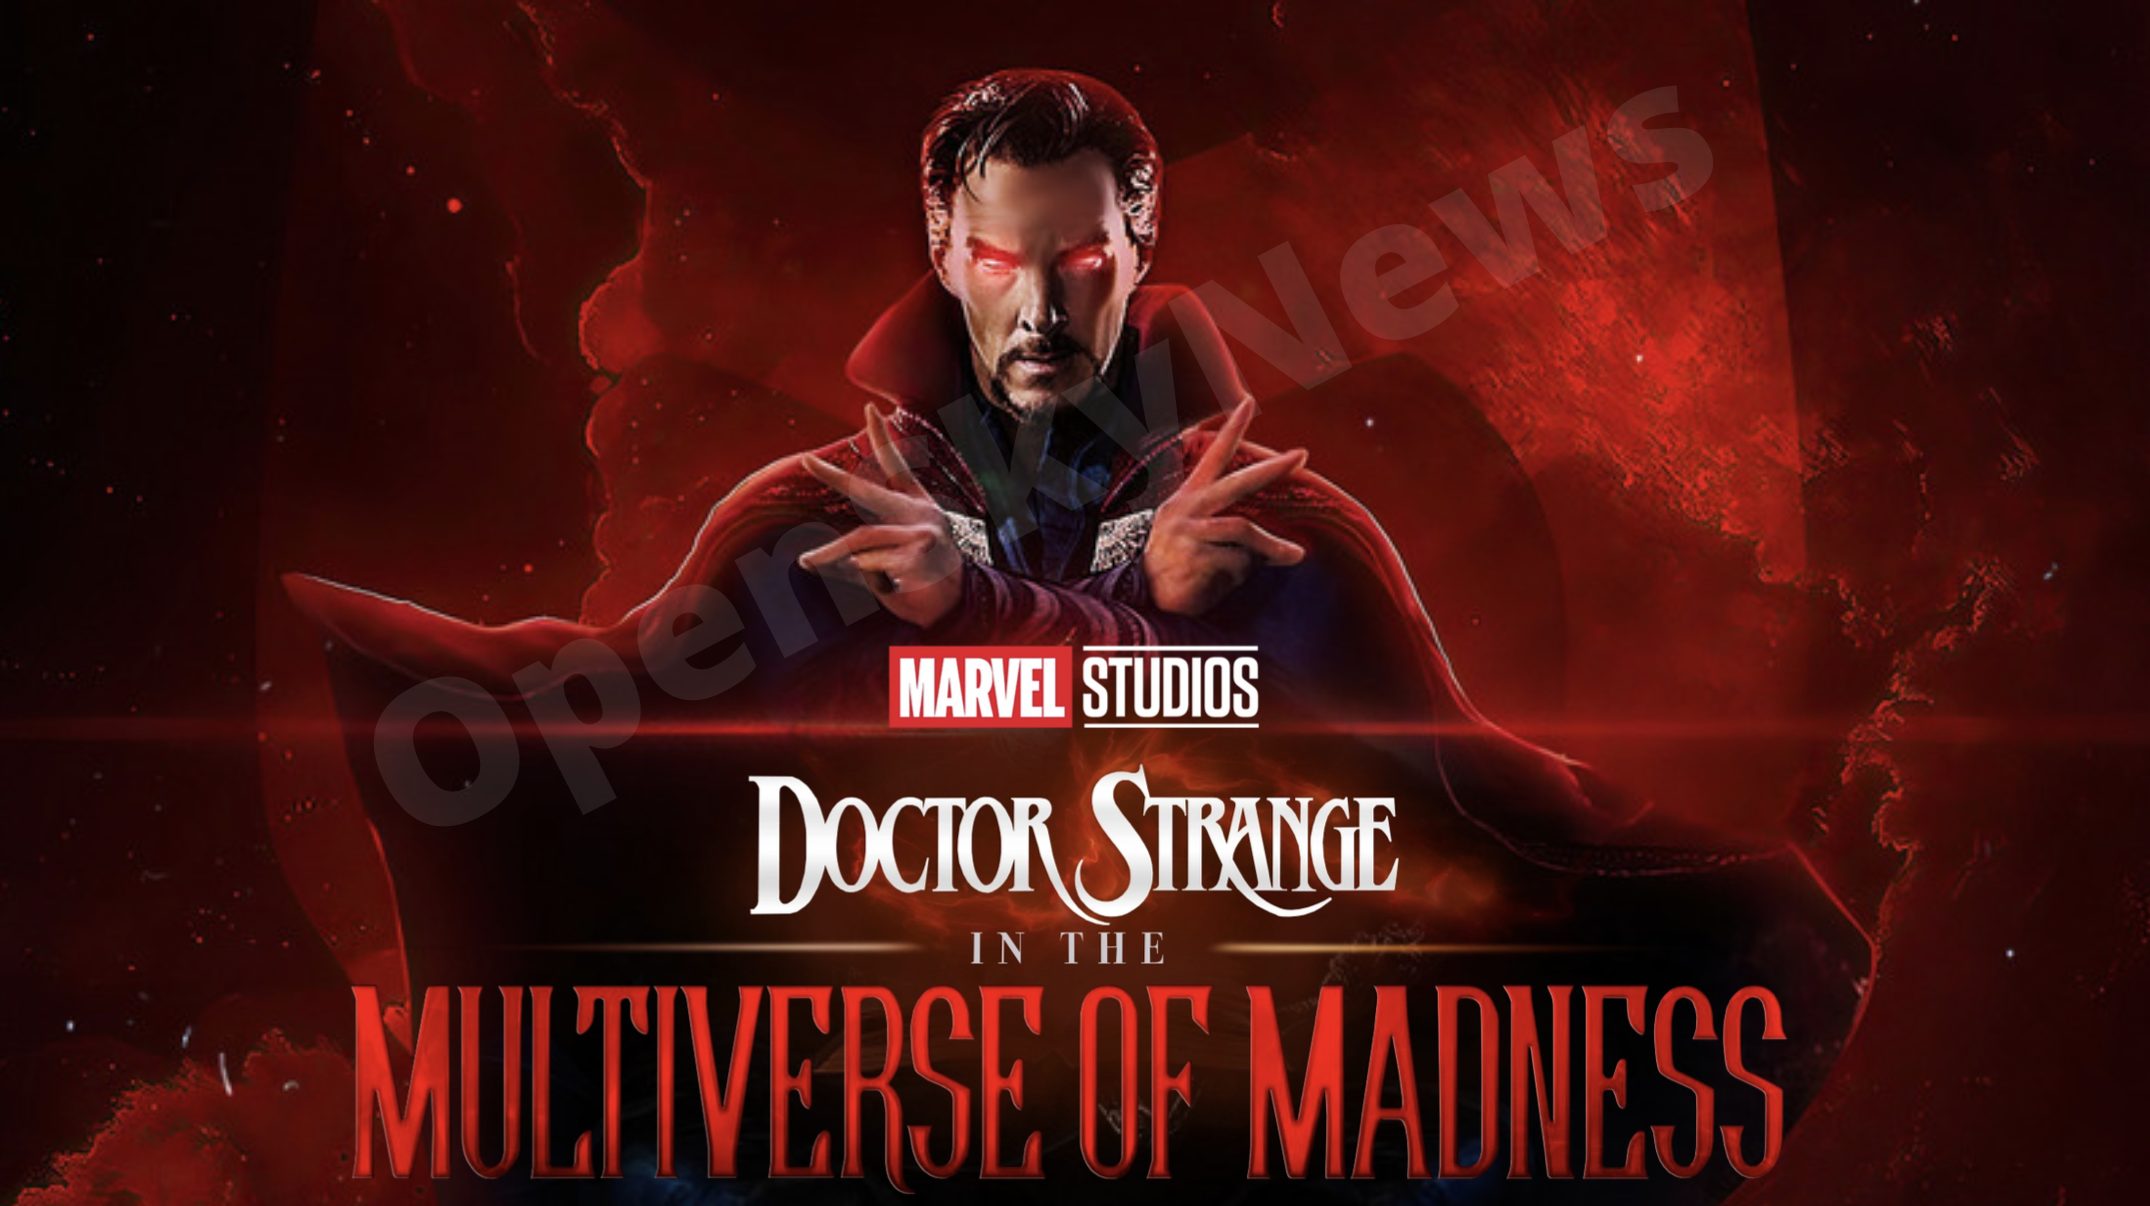 Date release strange madness multiverse dr of Doctor Strange